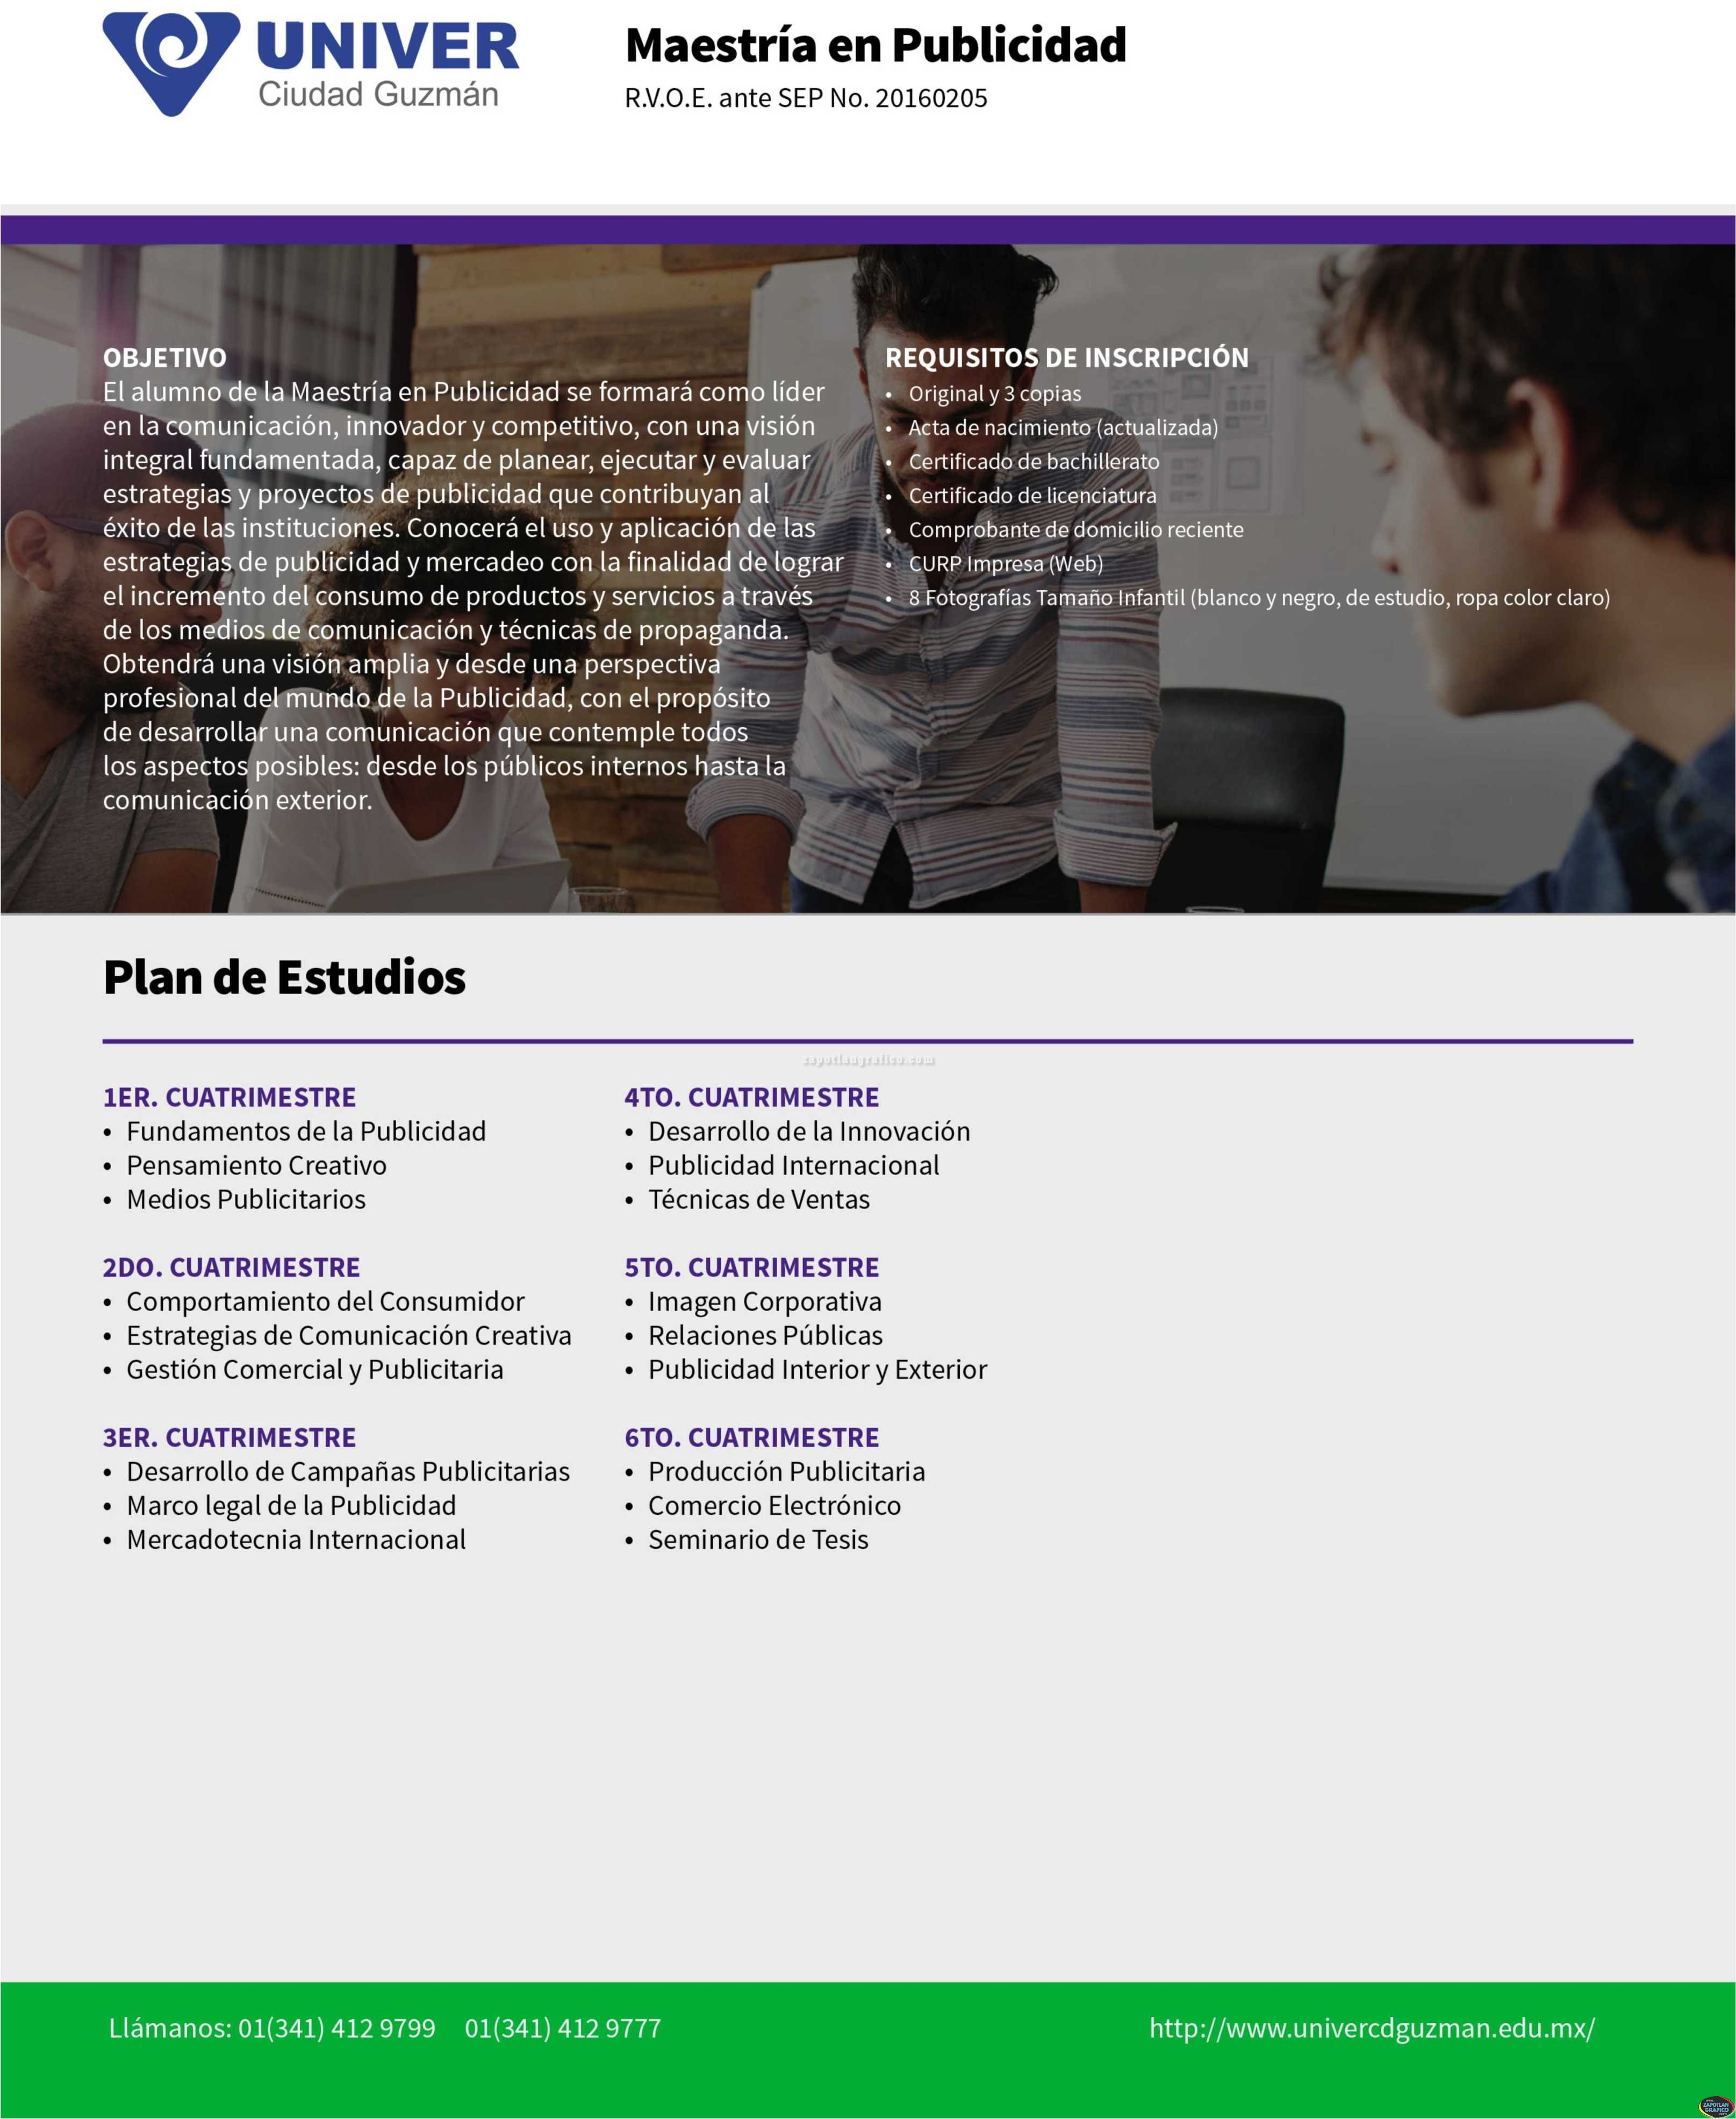 Plan de Estudios: Maestría en Publicidad UNIVER Ciudad Guzmán, Jal.